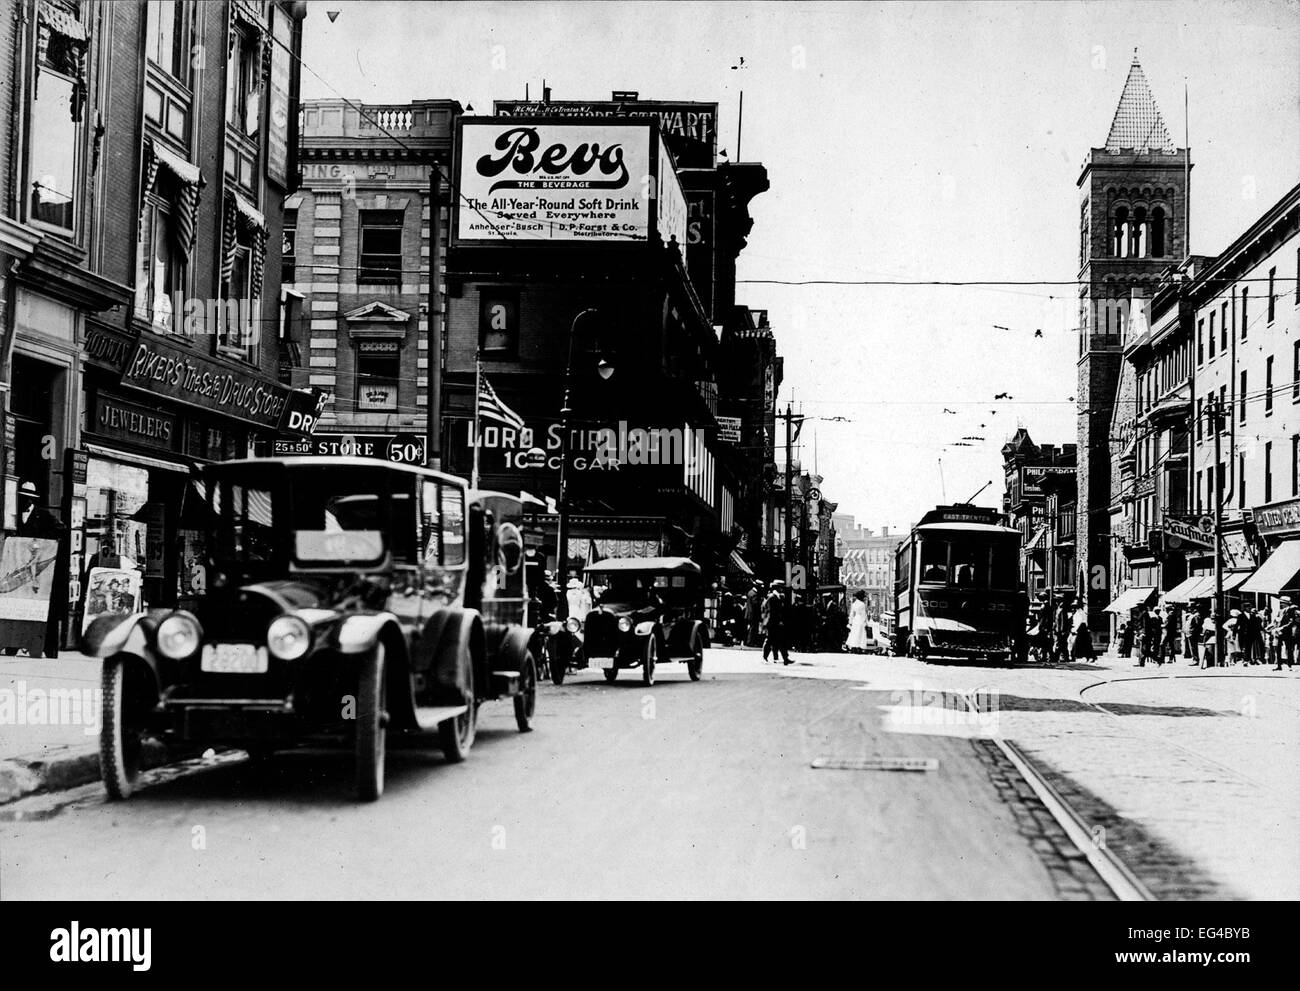 Scène de rue au niveau de l'État & grandes rues. Période sont visibles des automobiles, tramway, immeuble commercial, panneaux publicitaires "Bevo' (près de la bière), Trenton, NJ, vers 1920 Banque D'Images